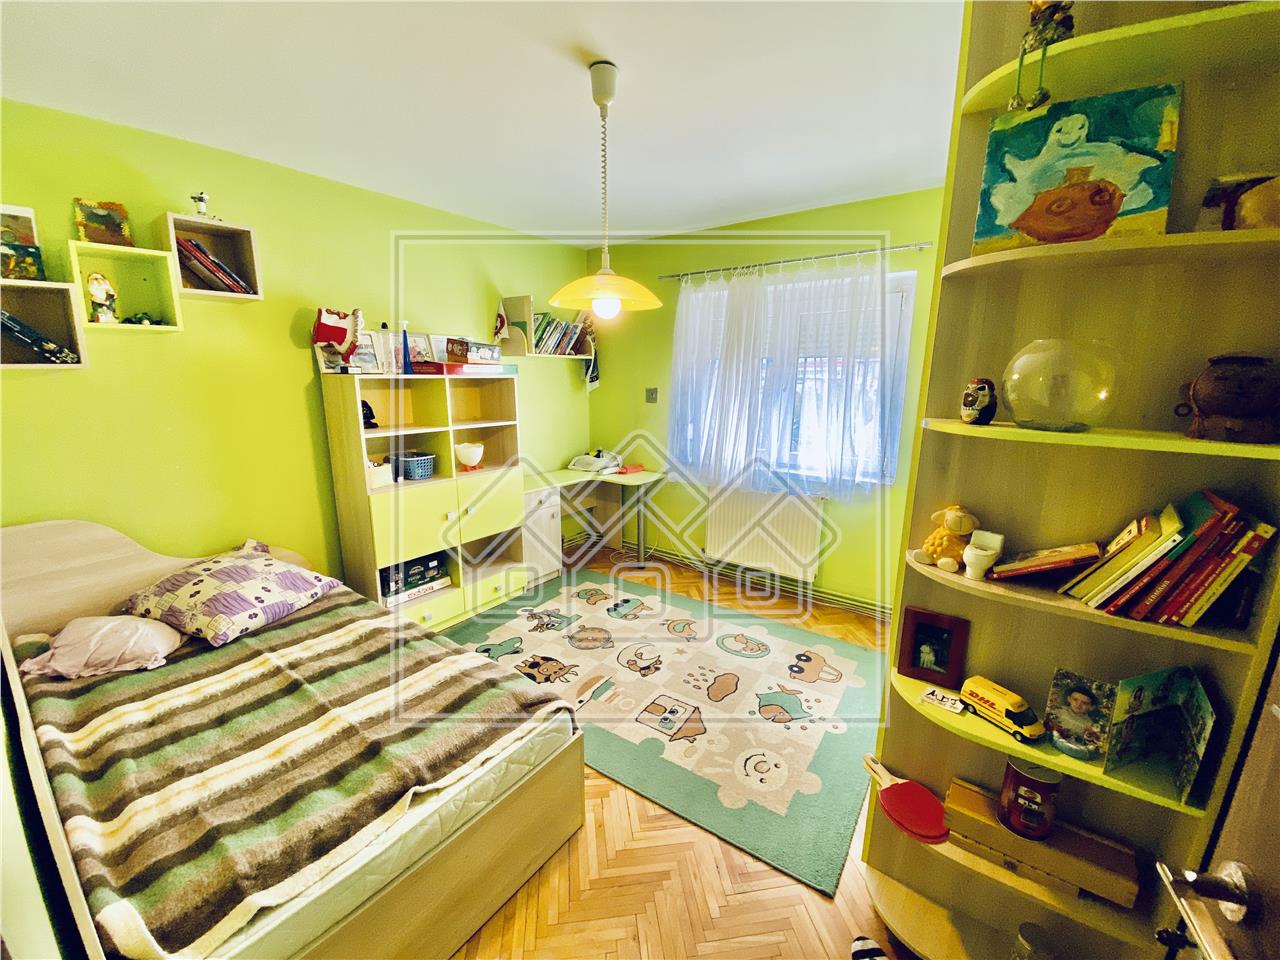 Apartament de vanzare in Sibiu - 2 camere cu balcon - Turnisor